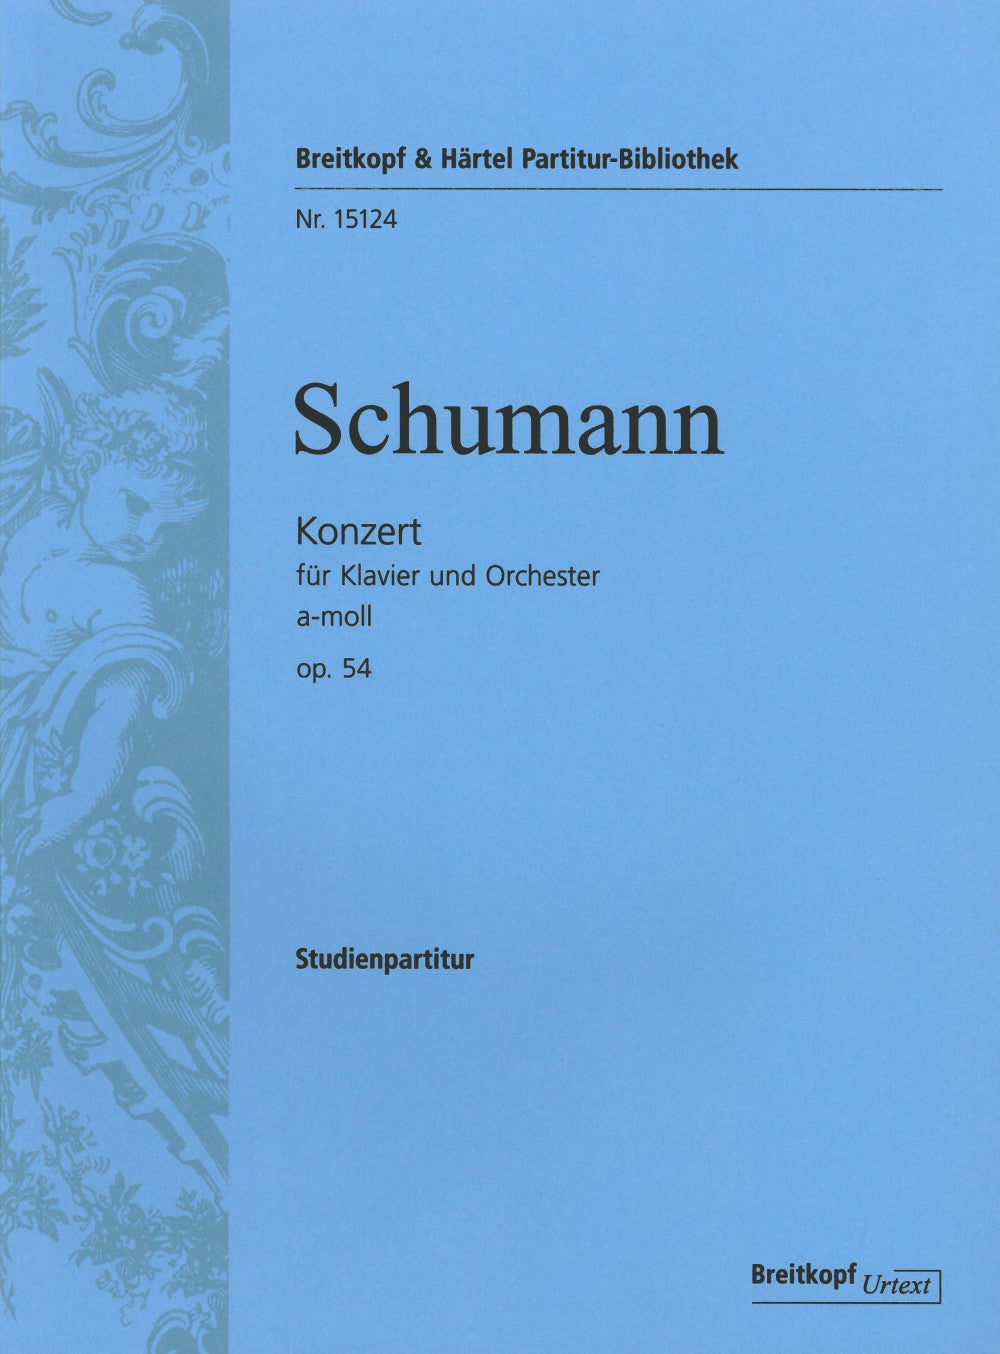 Mozart Piano Concerto No. 25 in C, K. 503